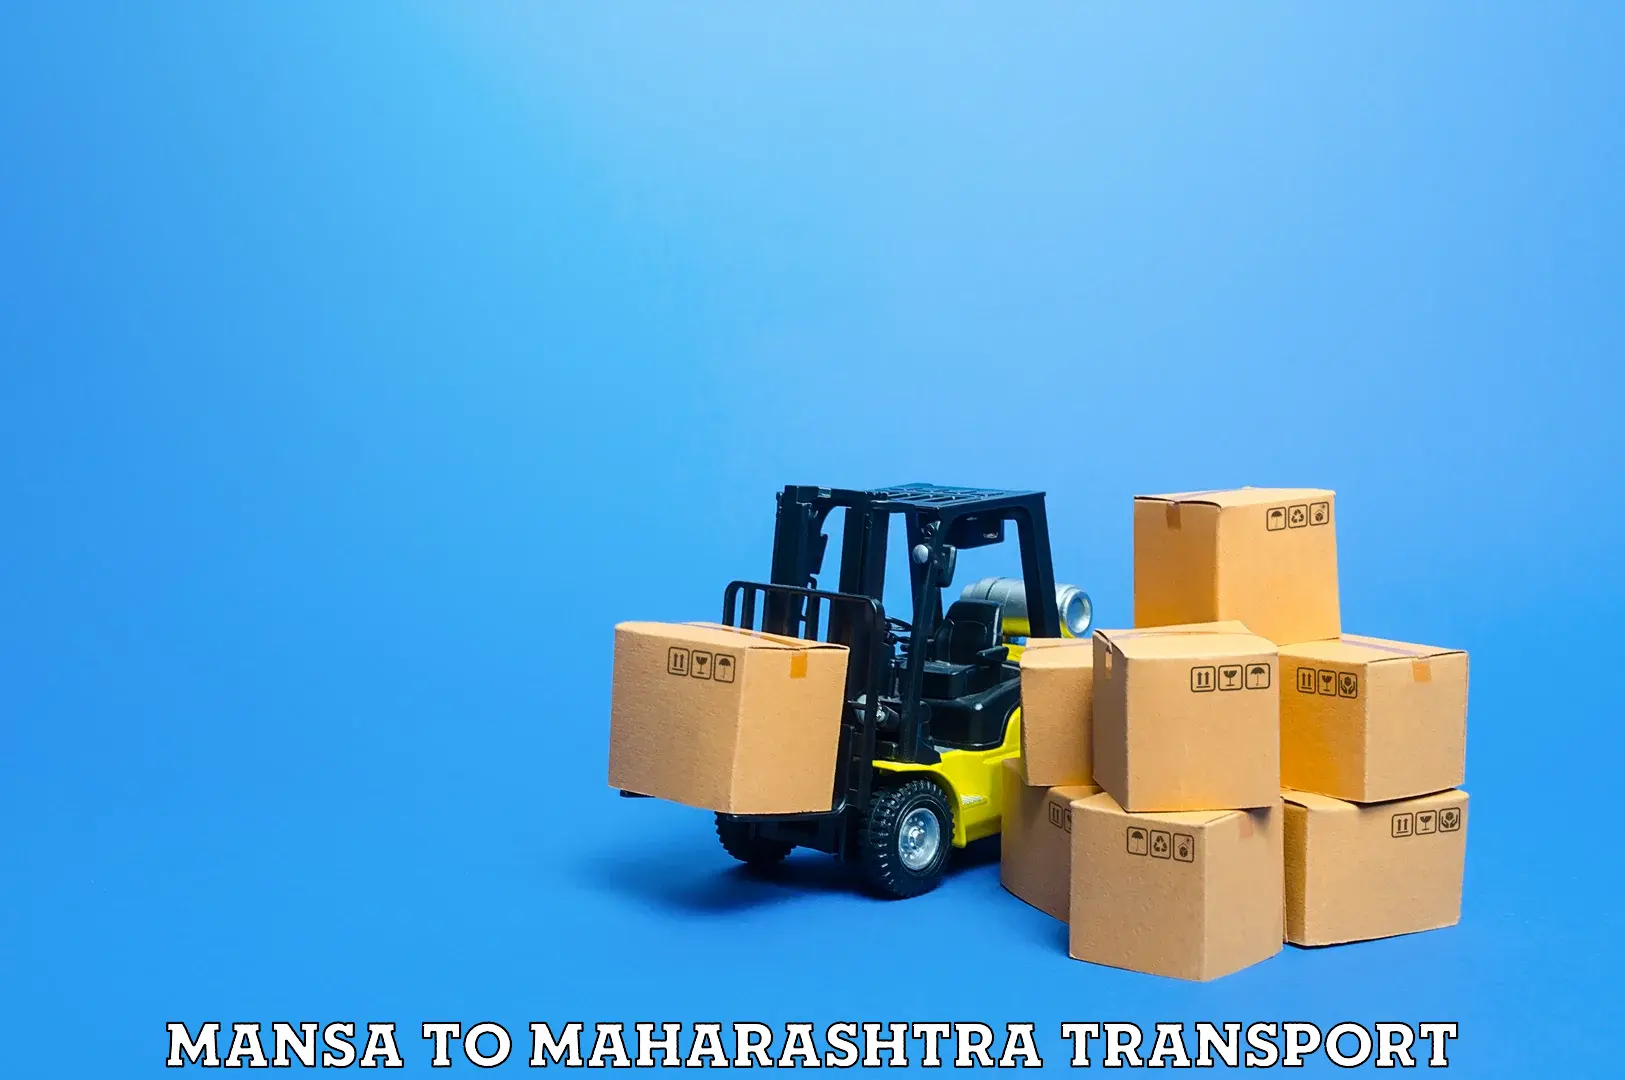 Commercial transport service Mansa to Maharashtra